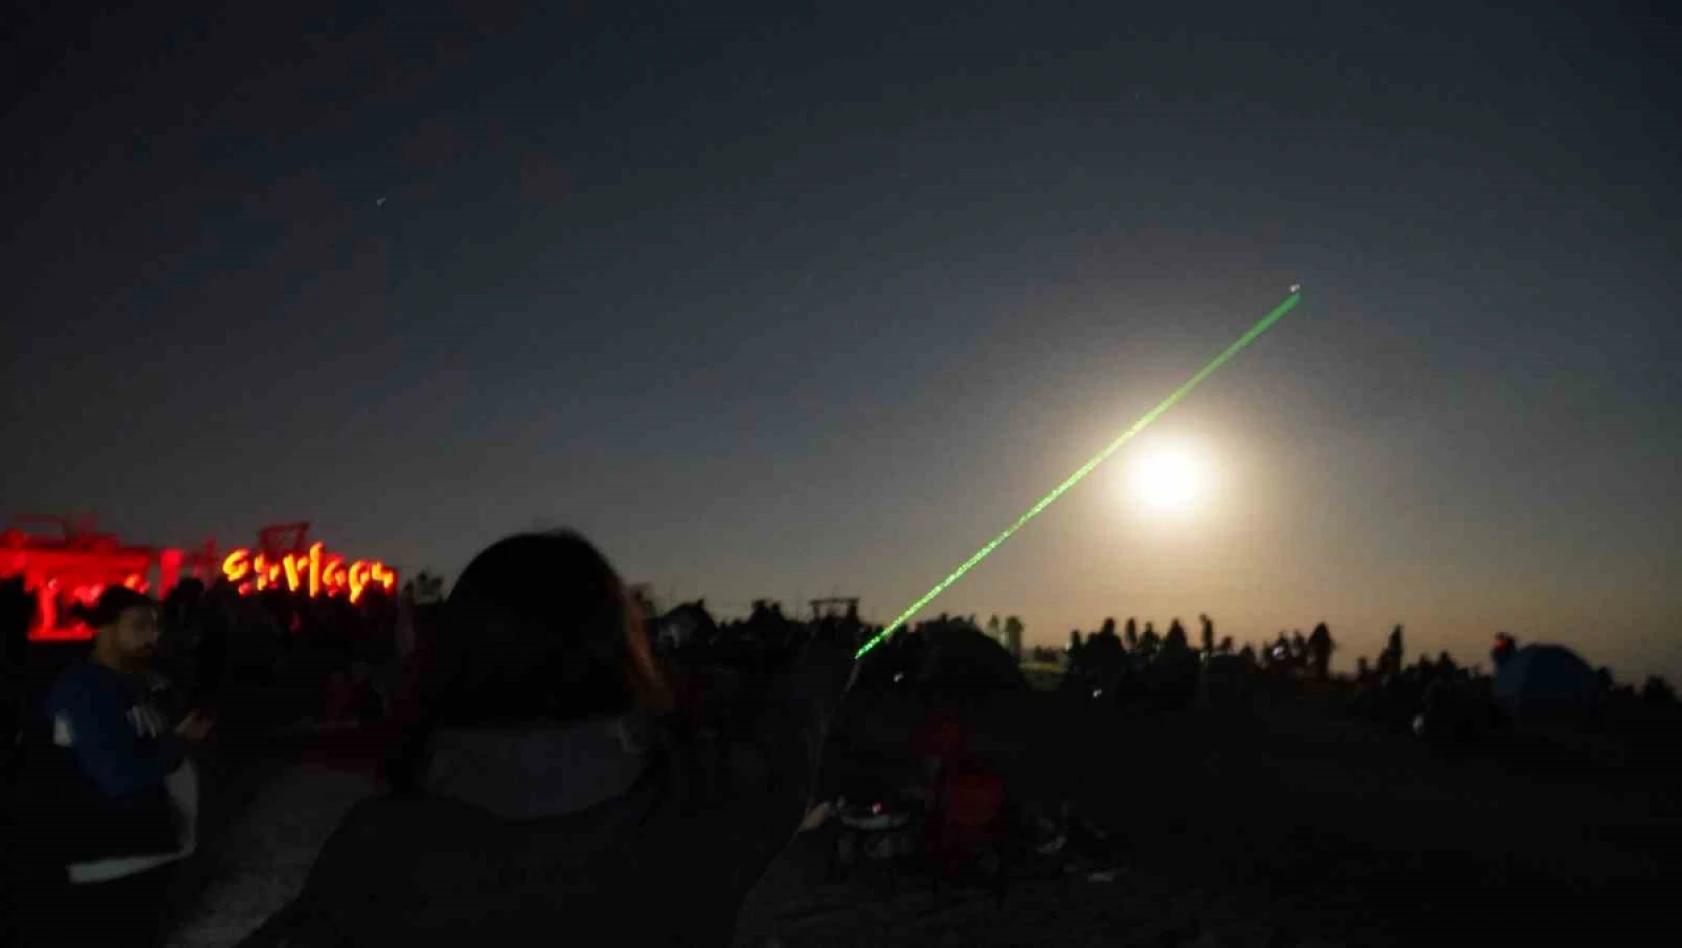 Amerikalı Astronomi Yazarı, Erciyes'te meteor şöleninde yer alacak